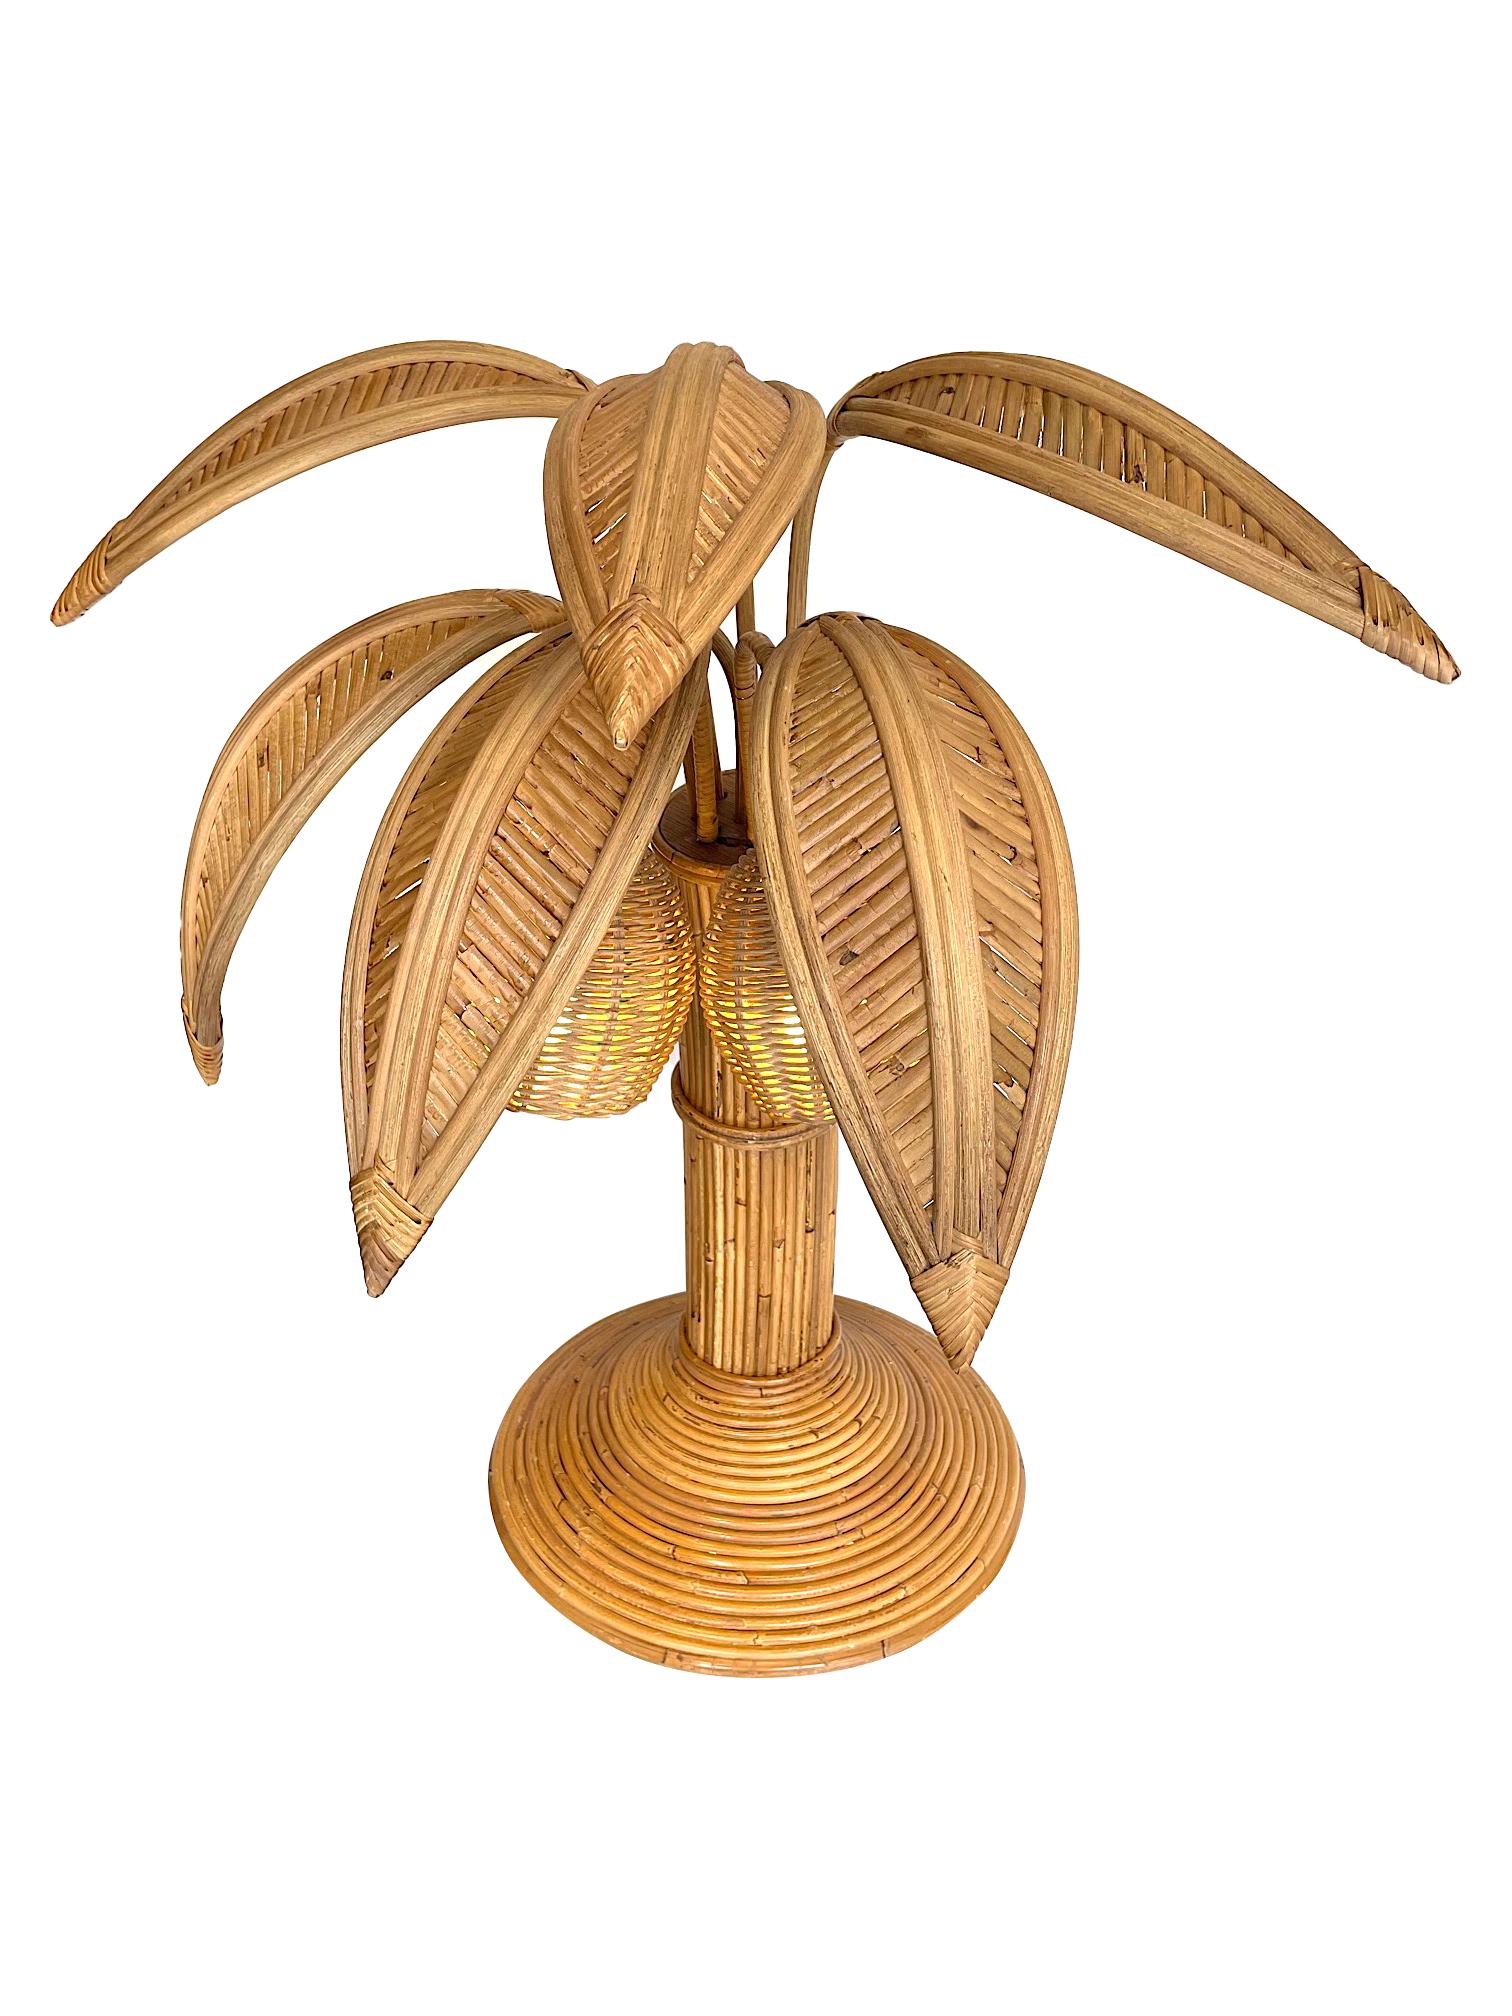 Eine Tischlampe aus Bambuspalmen im Stil von Mario Lopez Torres mit zwei Kokosnusslampen unter den Blättern.